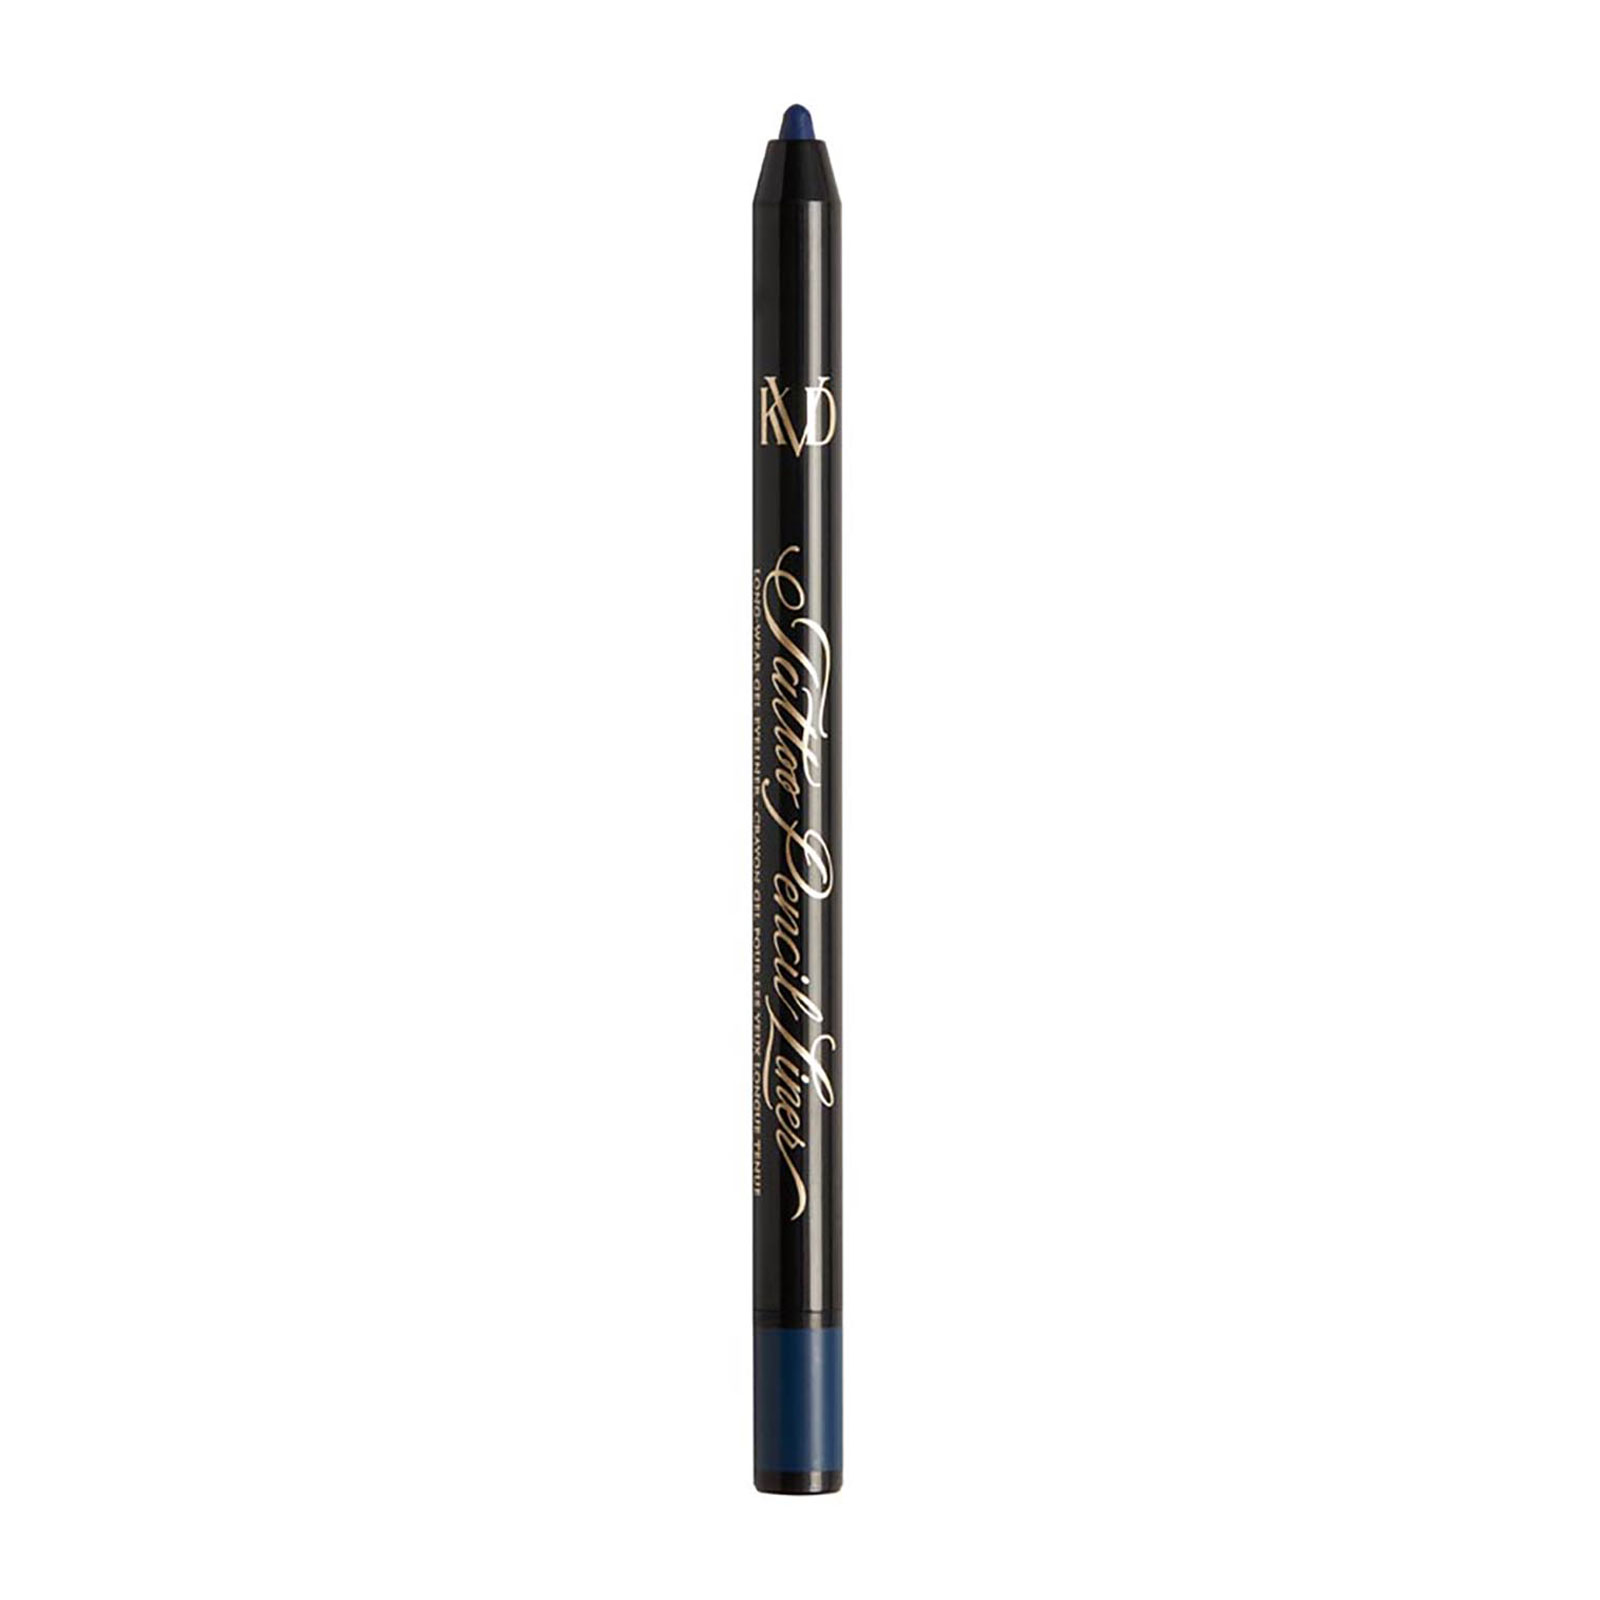 Kvd Beauty Tattoo Pencil Liner Waterproof Long-Wear Gel Eyeliner 0.5G Blue Ashes